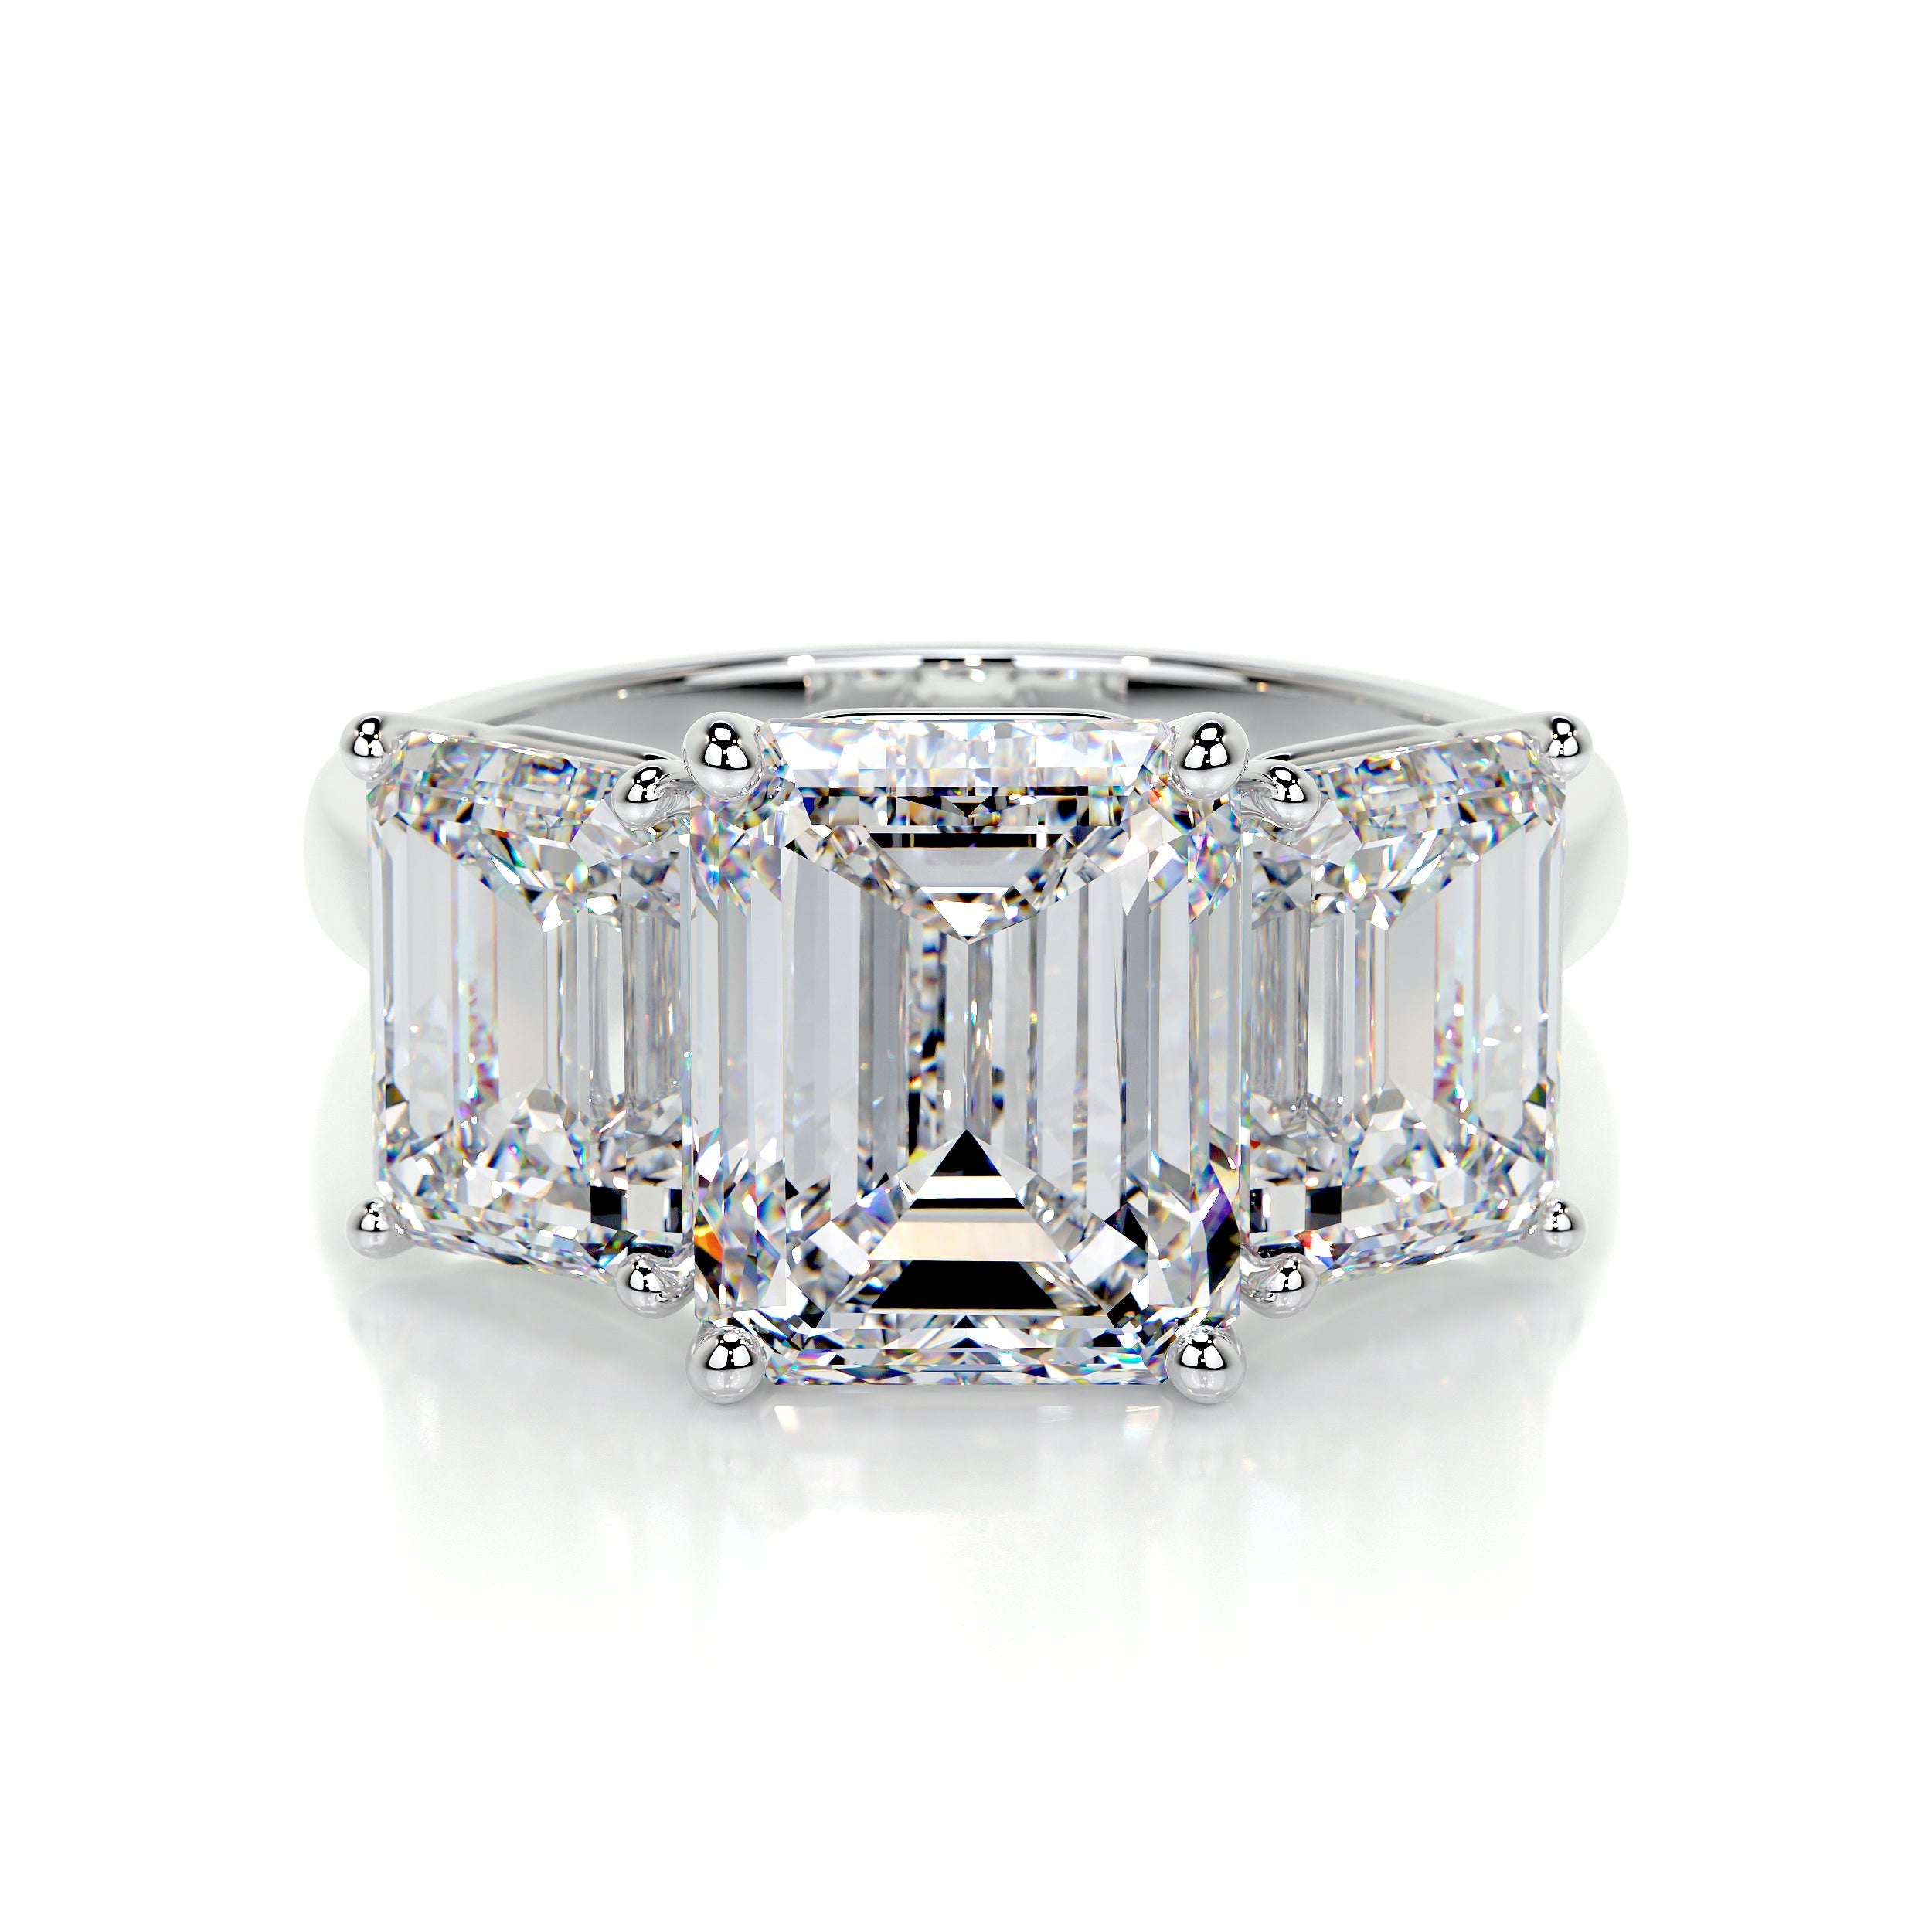 Amanda Lab Grown Diamond Ring   (4 Carat) -14K White Gold